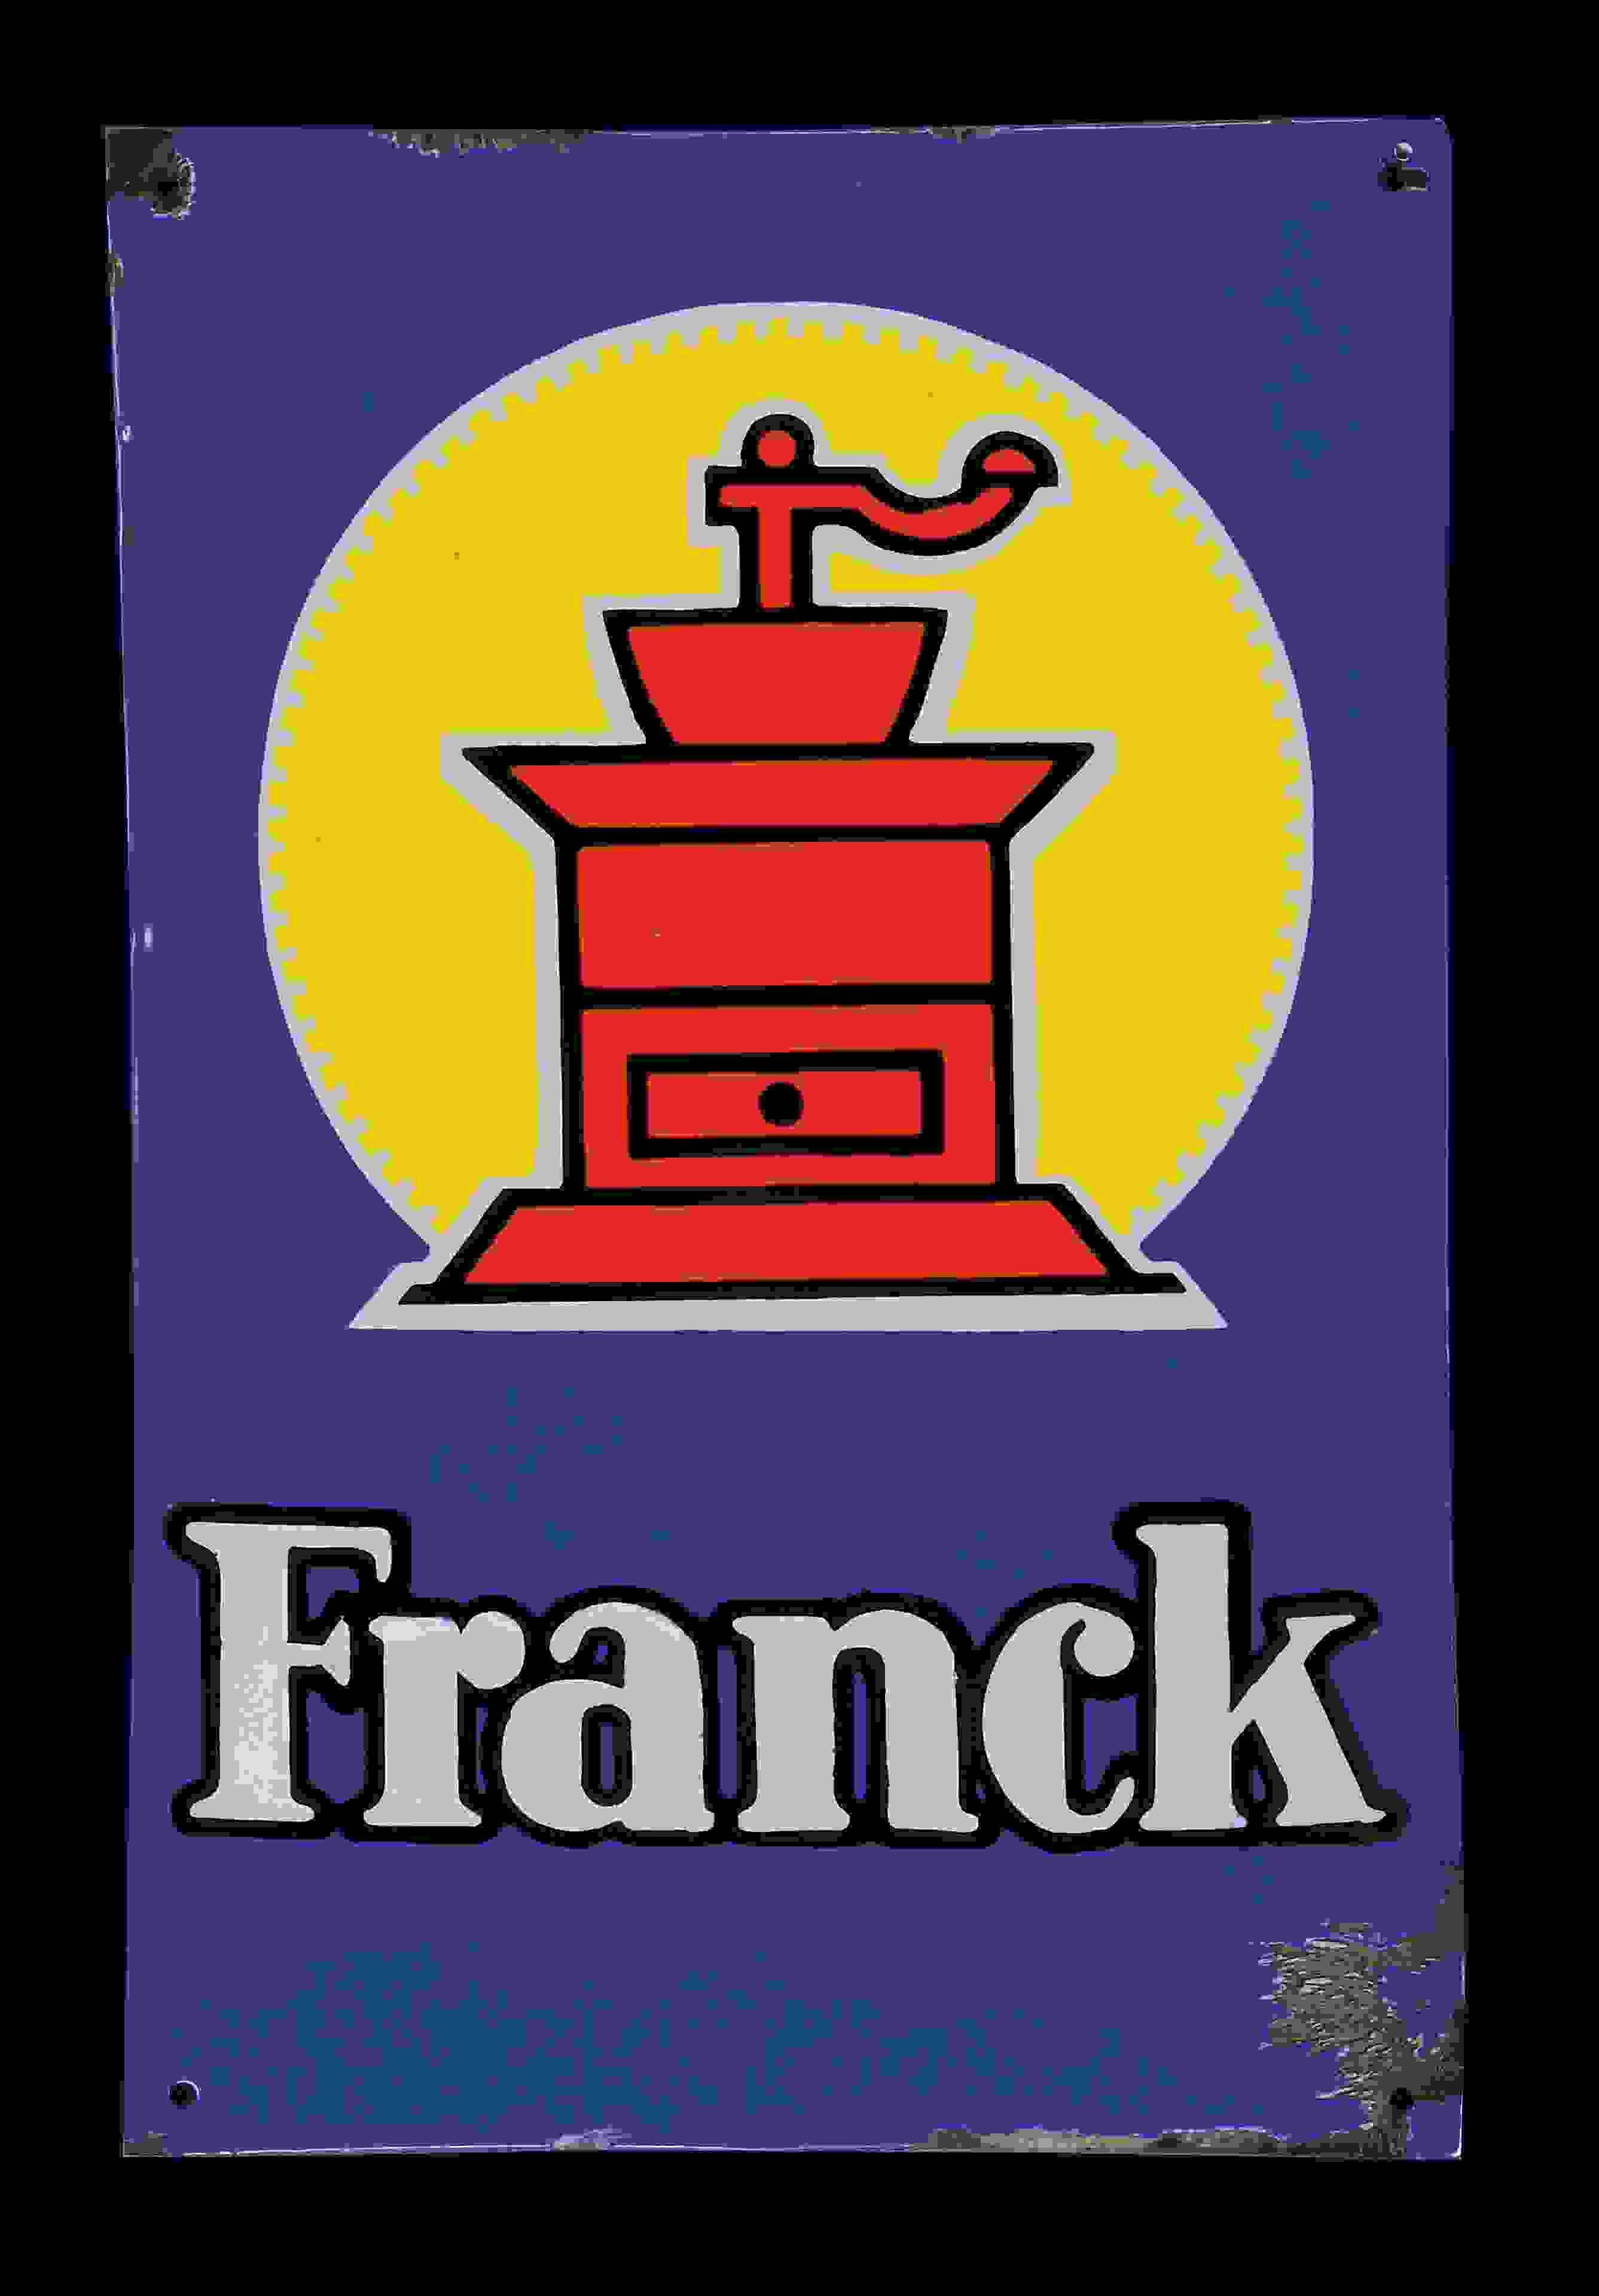 Franck 